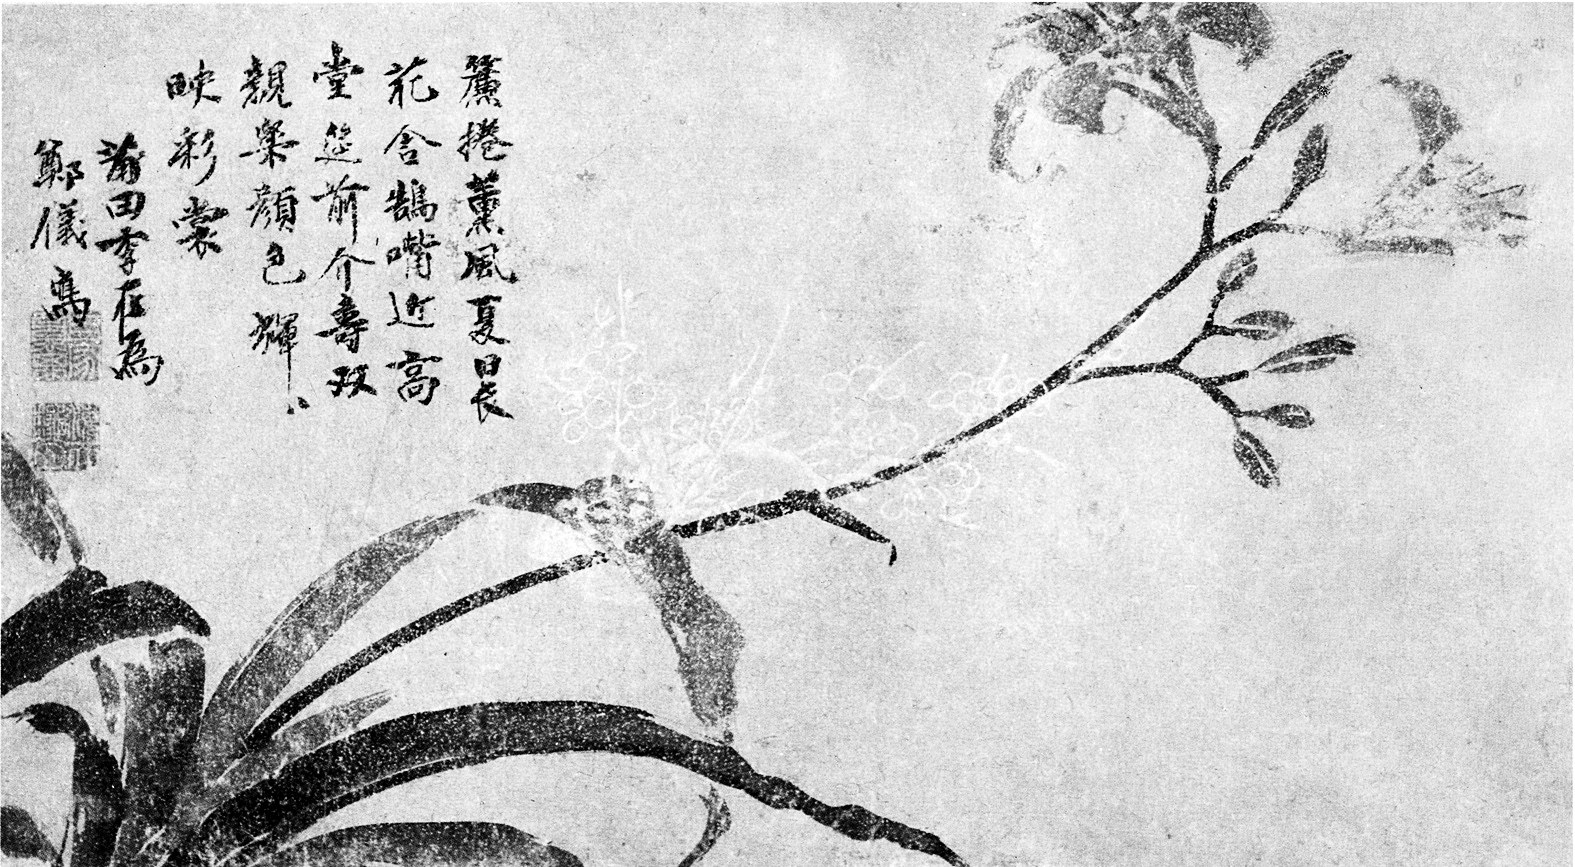 古代诗画和瓷器上的萱草是中国母亲花